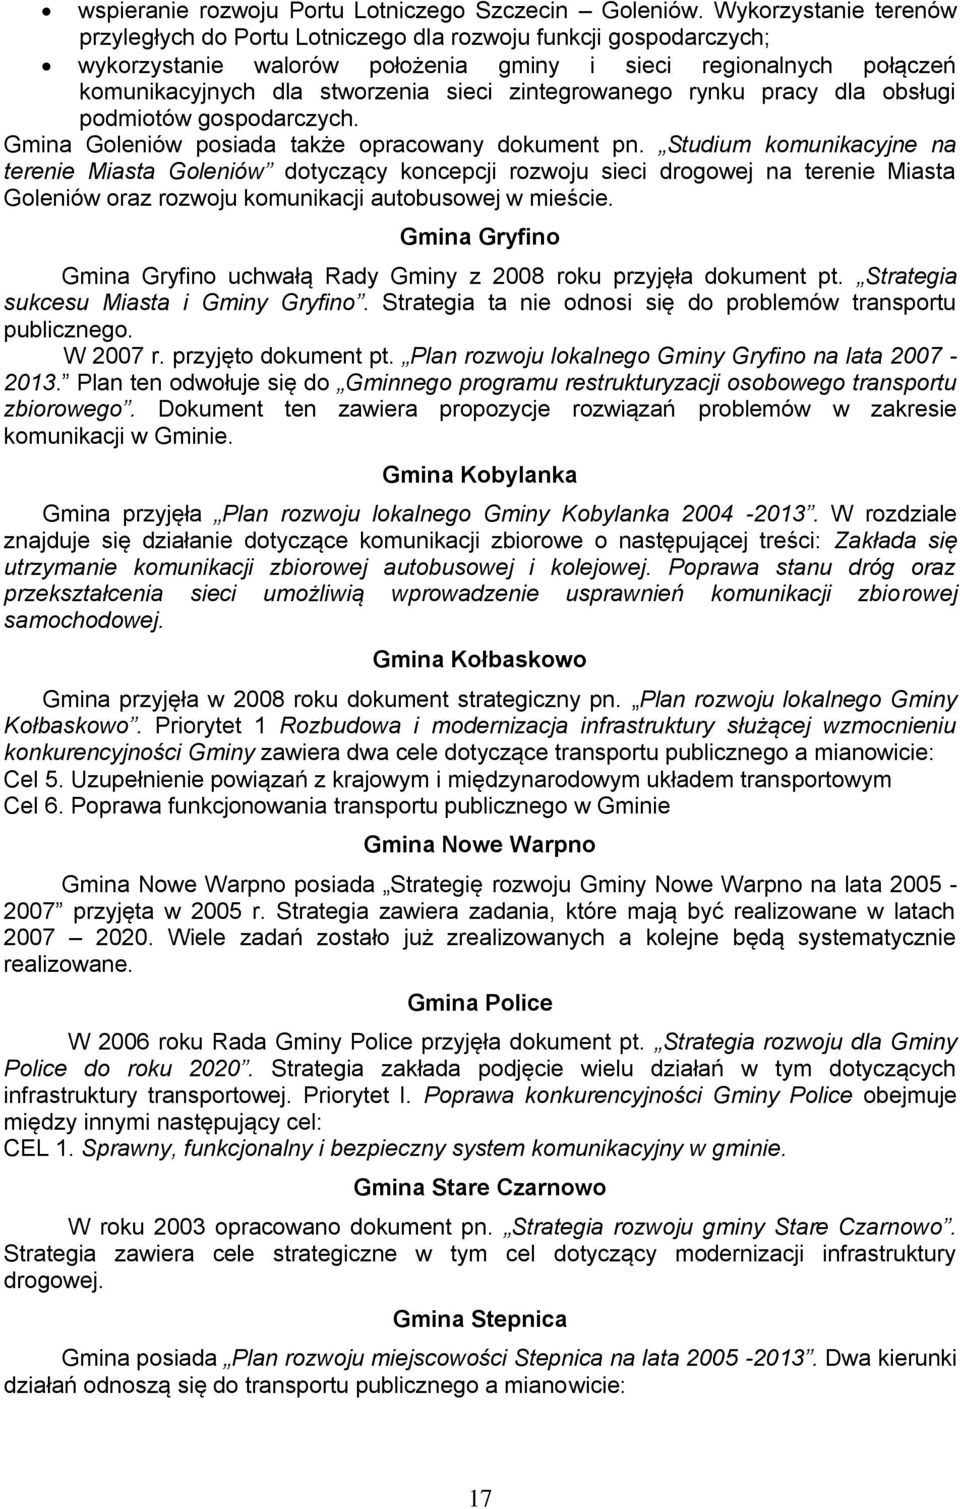 zintegrowanego rynku pracy dla obsługi podmiotów gospodarczych. Gmina Goleniów posiada także opracowany dokument pn.